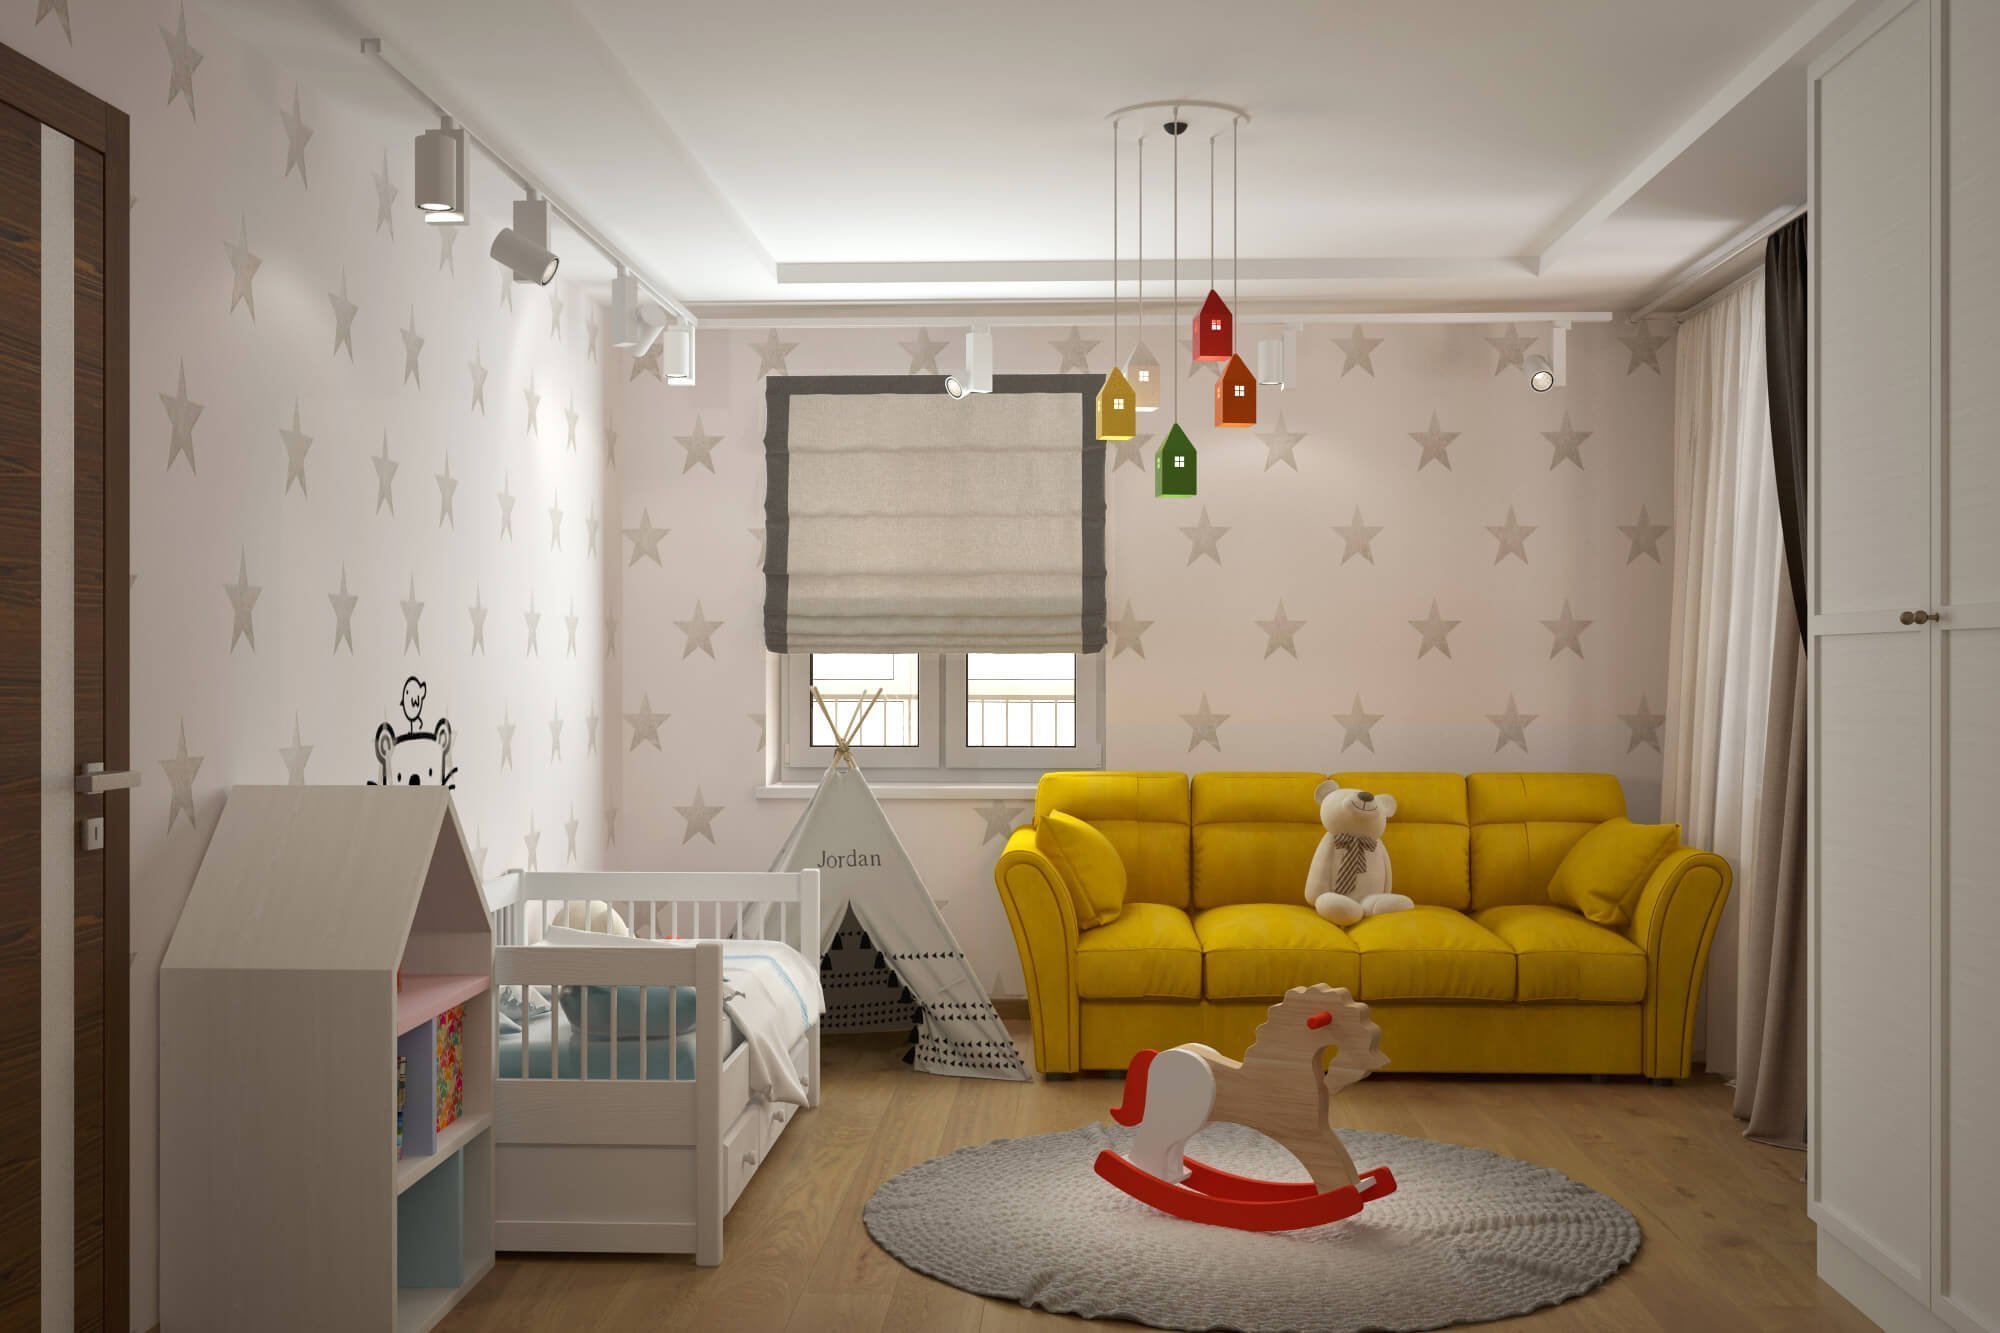 Планировка мебели в однокомнатной квартире с ребенком